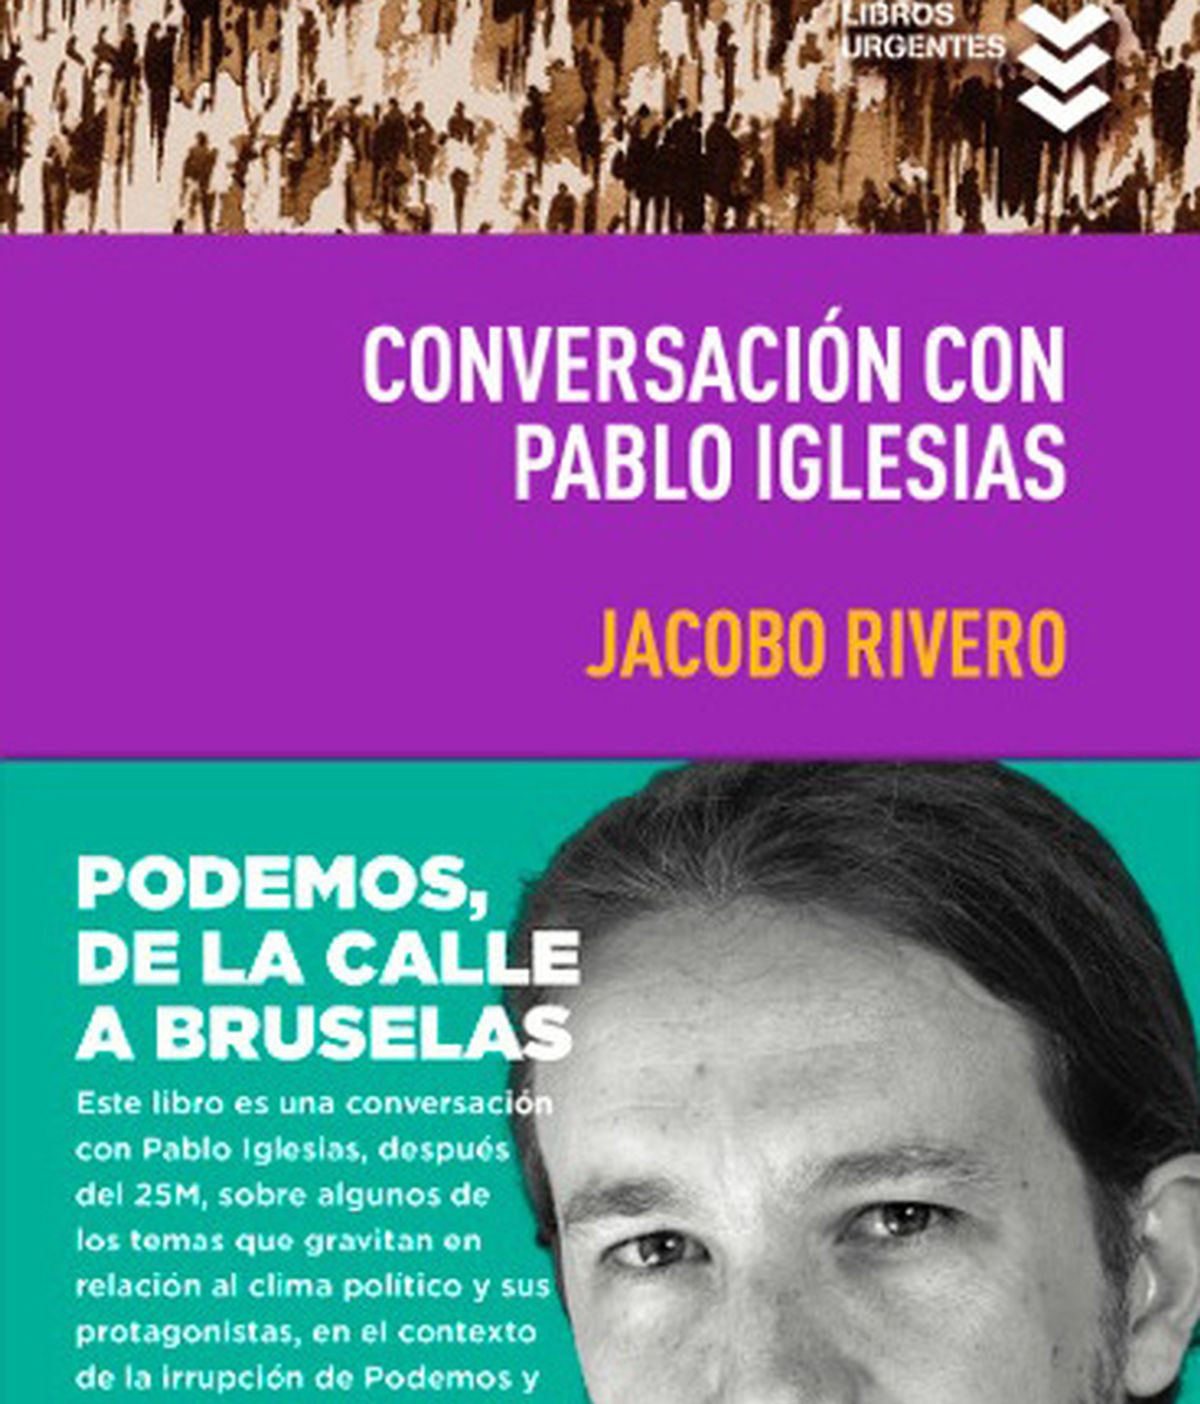 Portada del libro de Jacobo Rivero, 'Conversación con Pablo Iglesias'